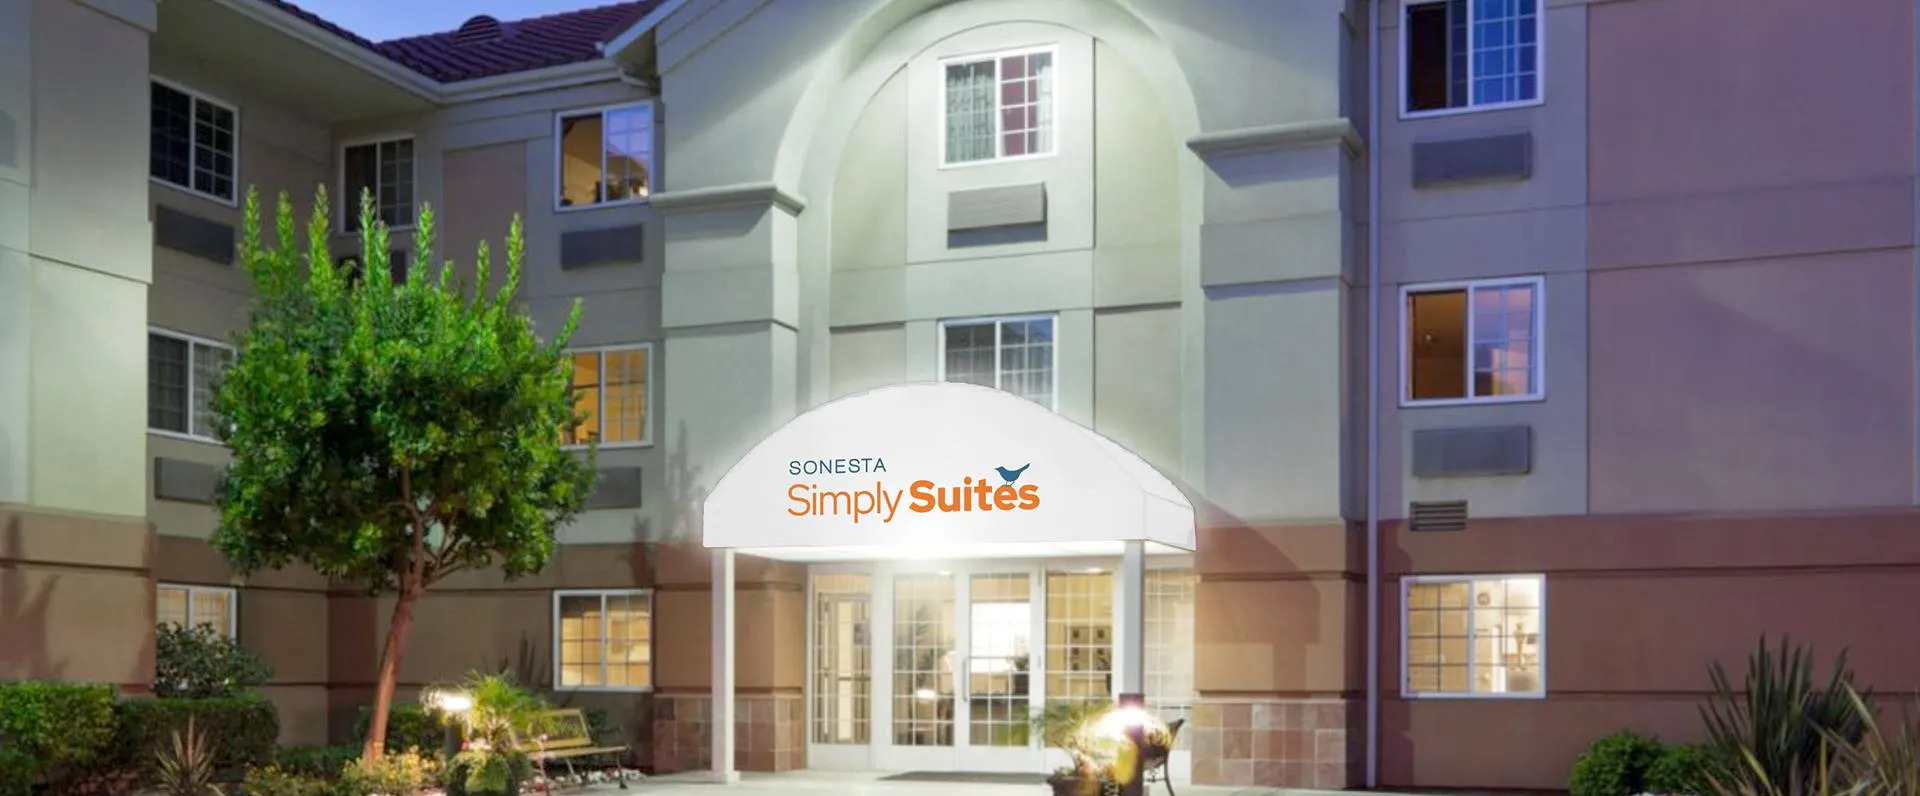 Photo of Sonesta Simply Suites Silicon Valley Santa Clara, Santa Clara, CA